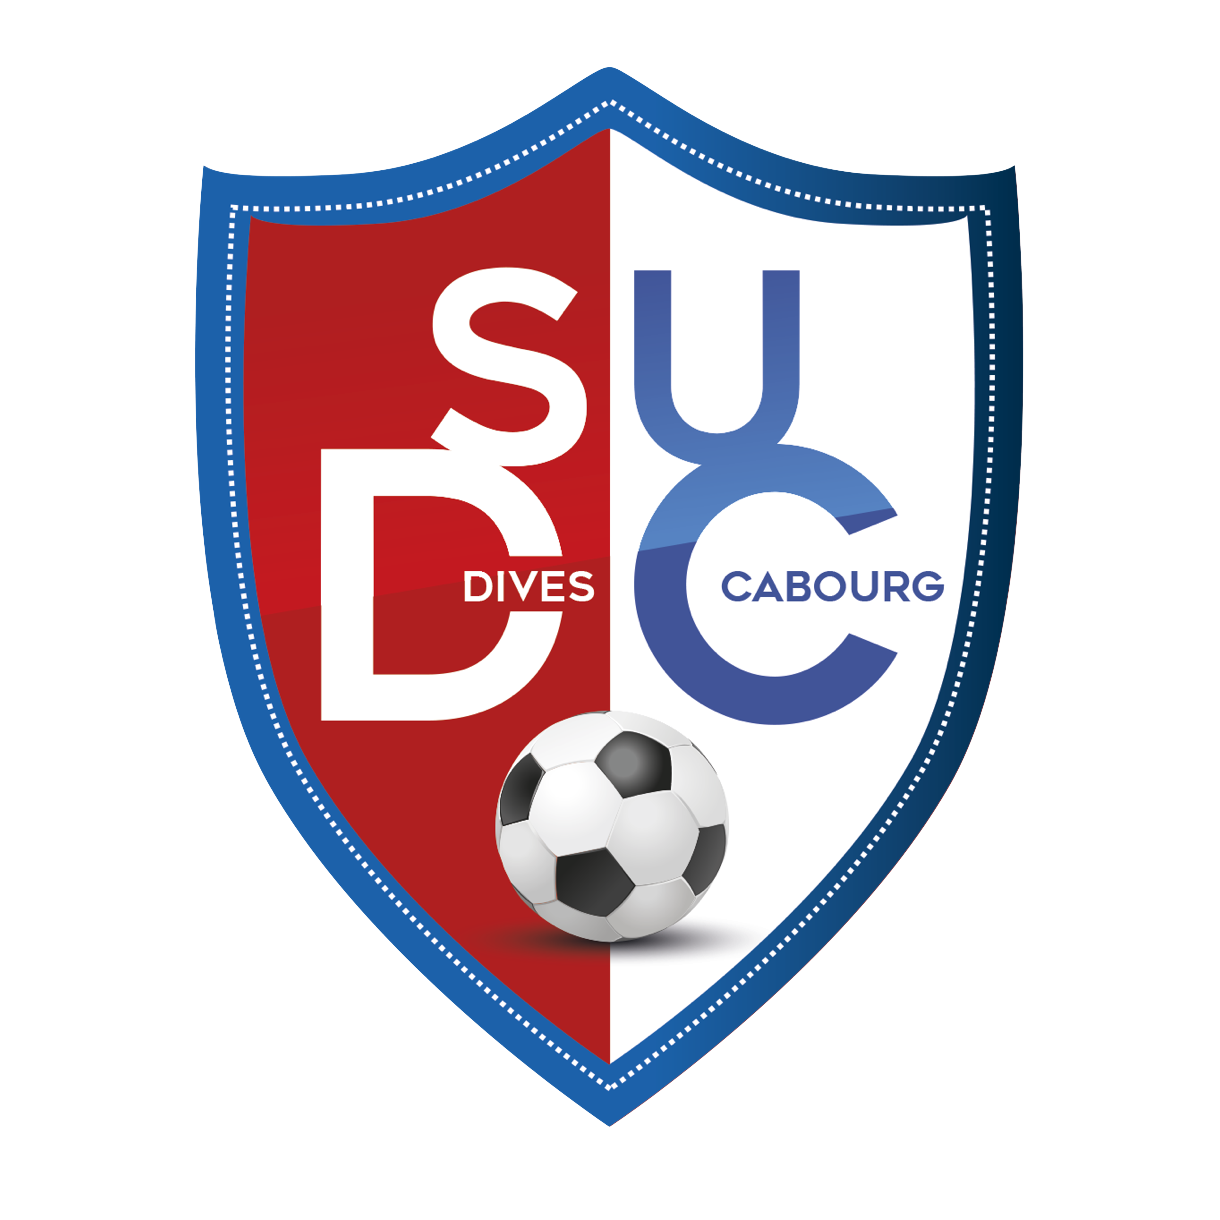 Wappen SU Dives-Carbourg diverse